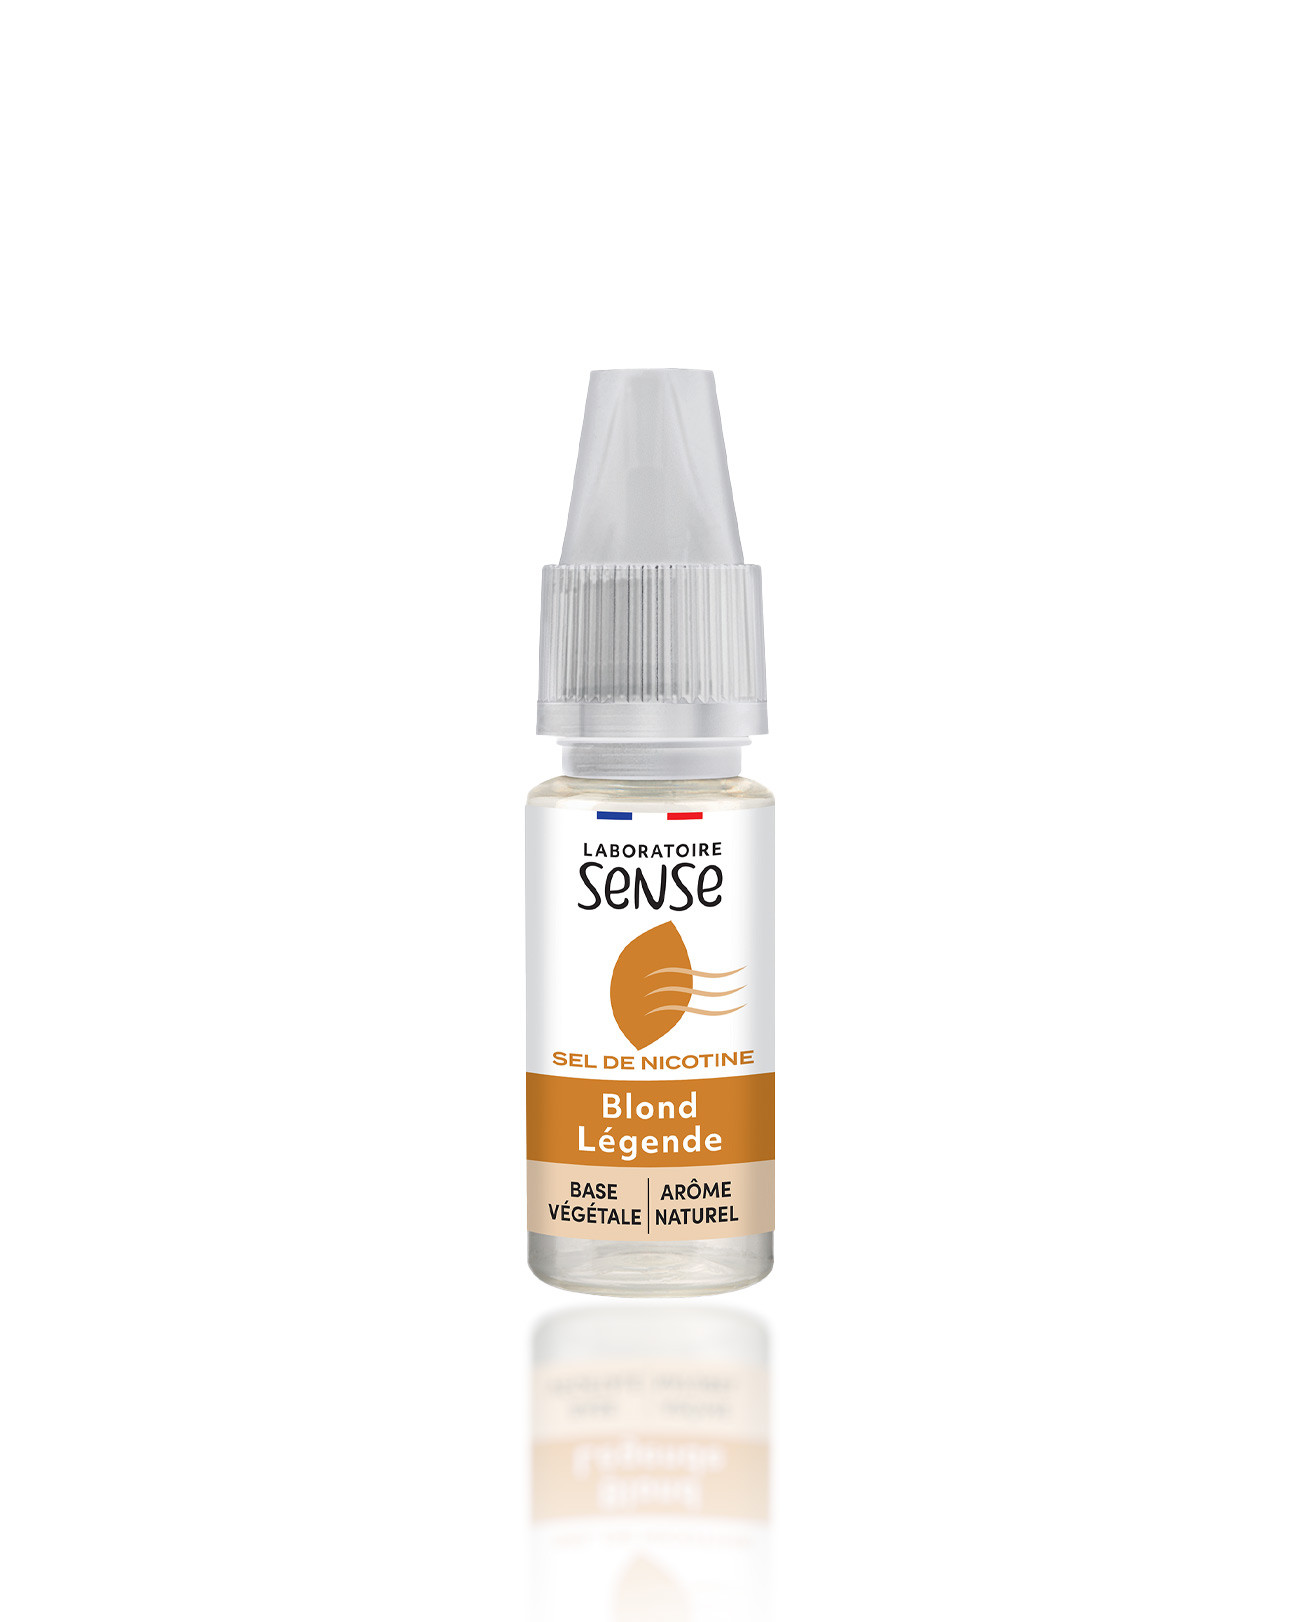 E-liquide 10 ml Blond Légende en sel de nicotine Laboratoire Sense nouveau packaging